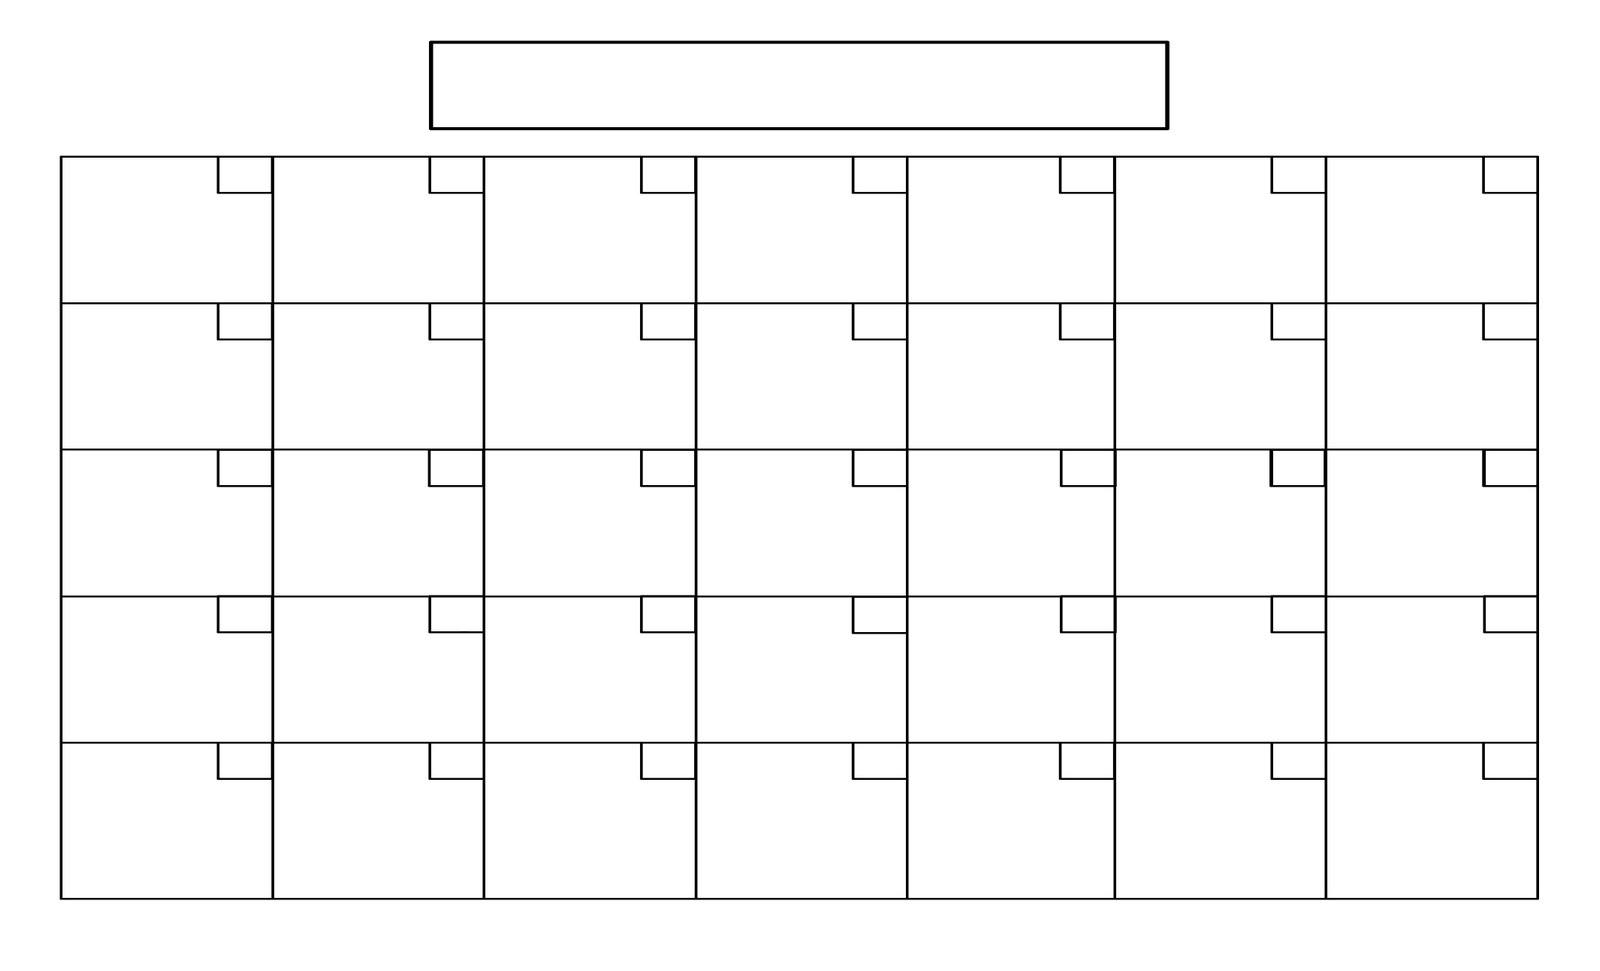 blank-calendar-no-dates-example-calendar-printable